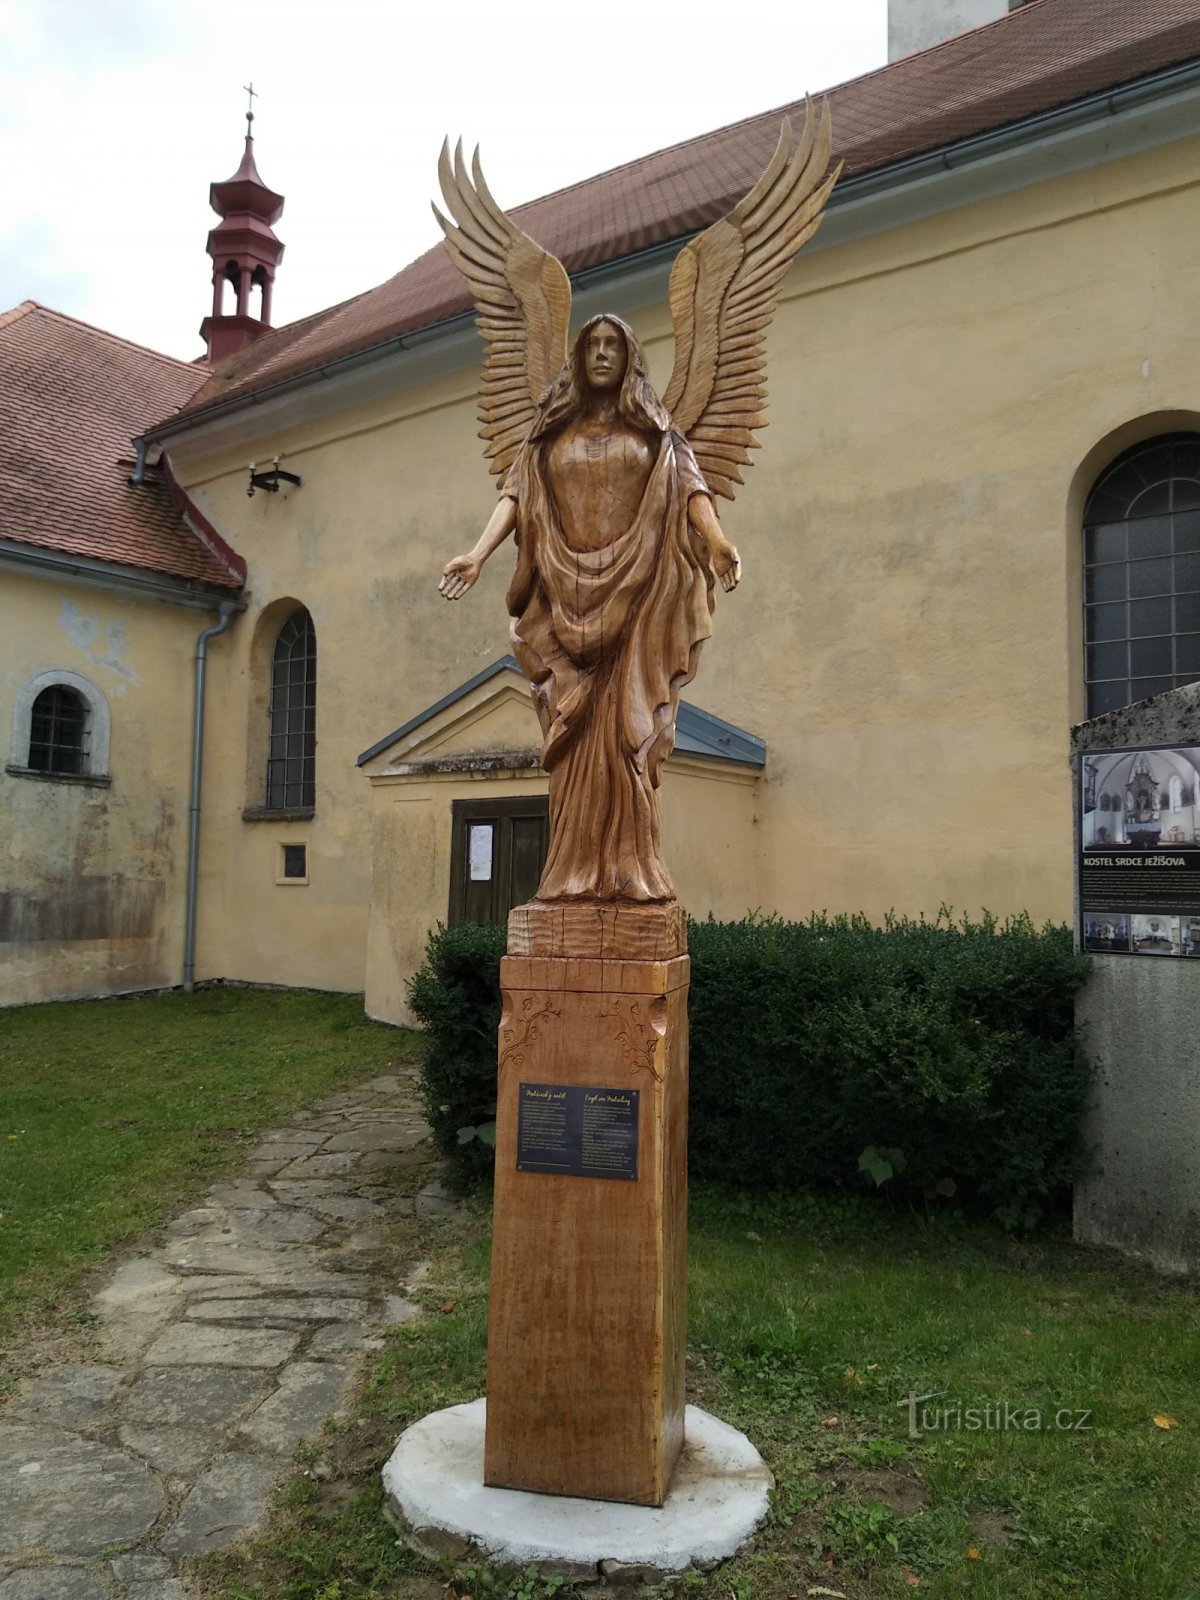 Malšín angyal a templom előtt